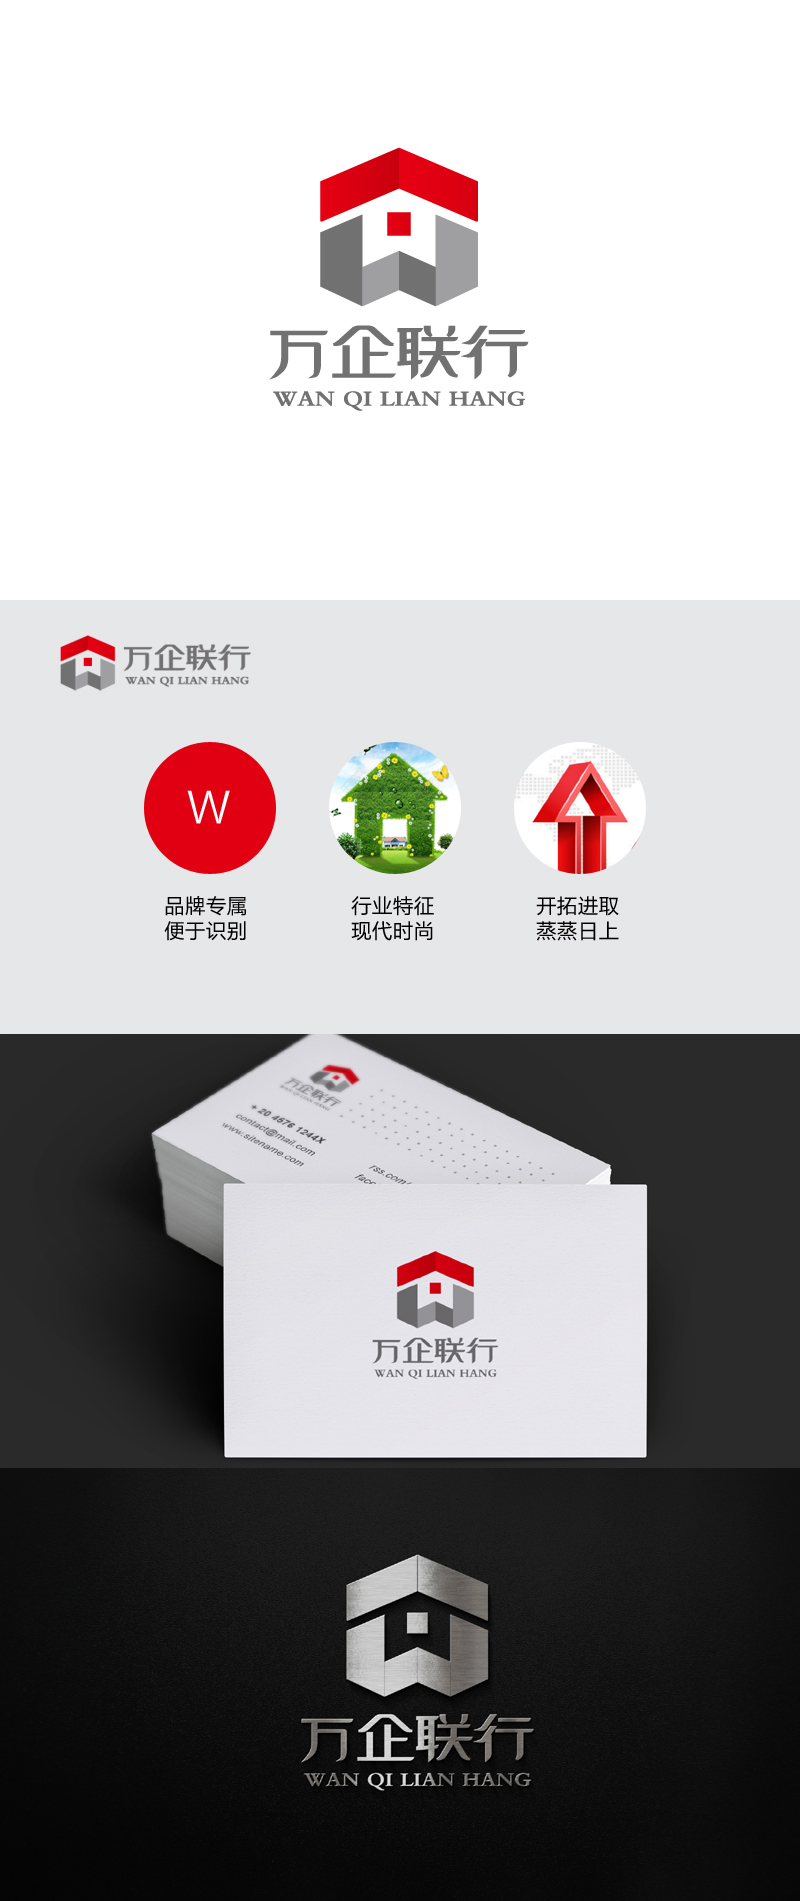 杨勇的万企联行物业服务有限公司logo设计